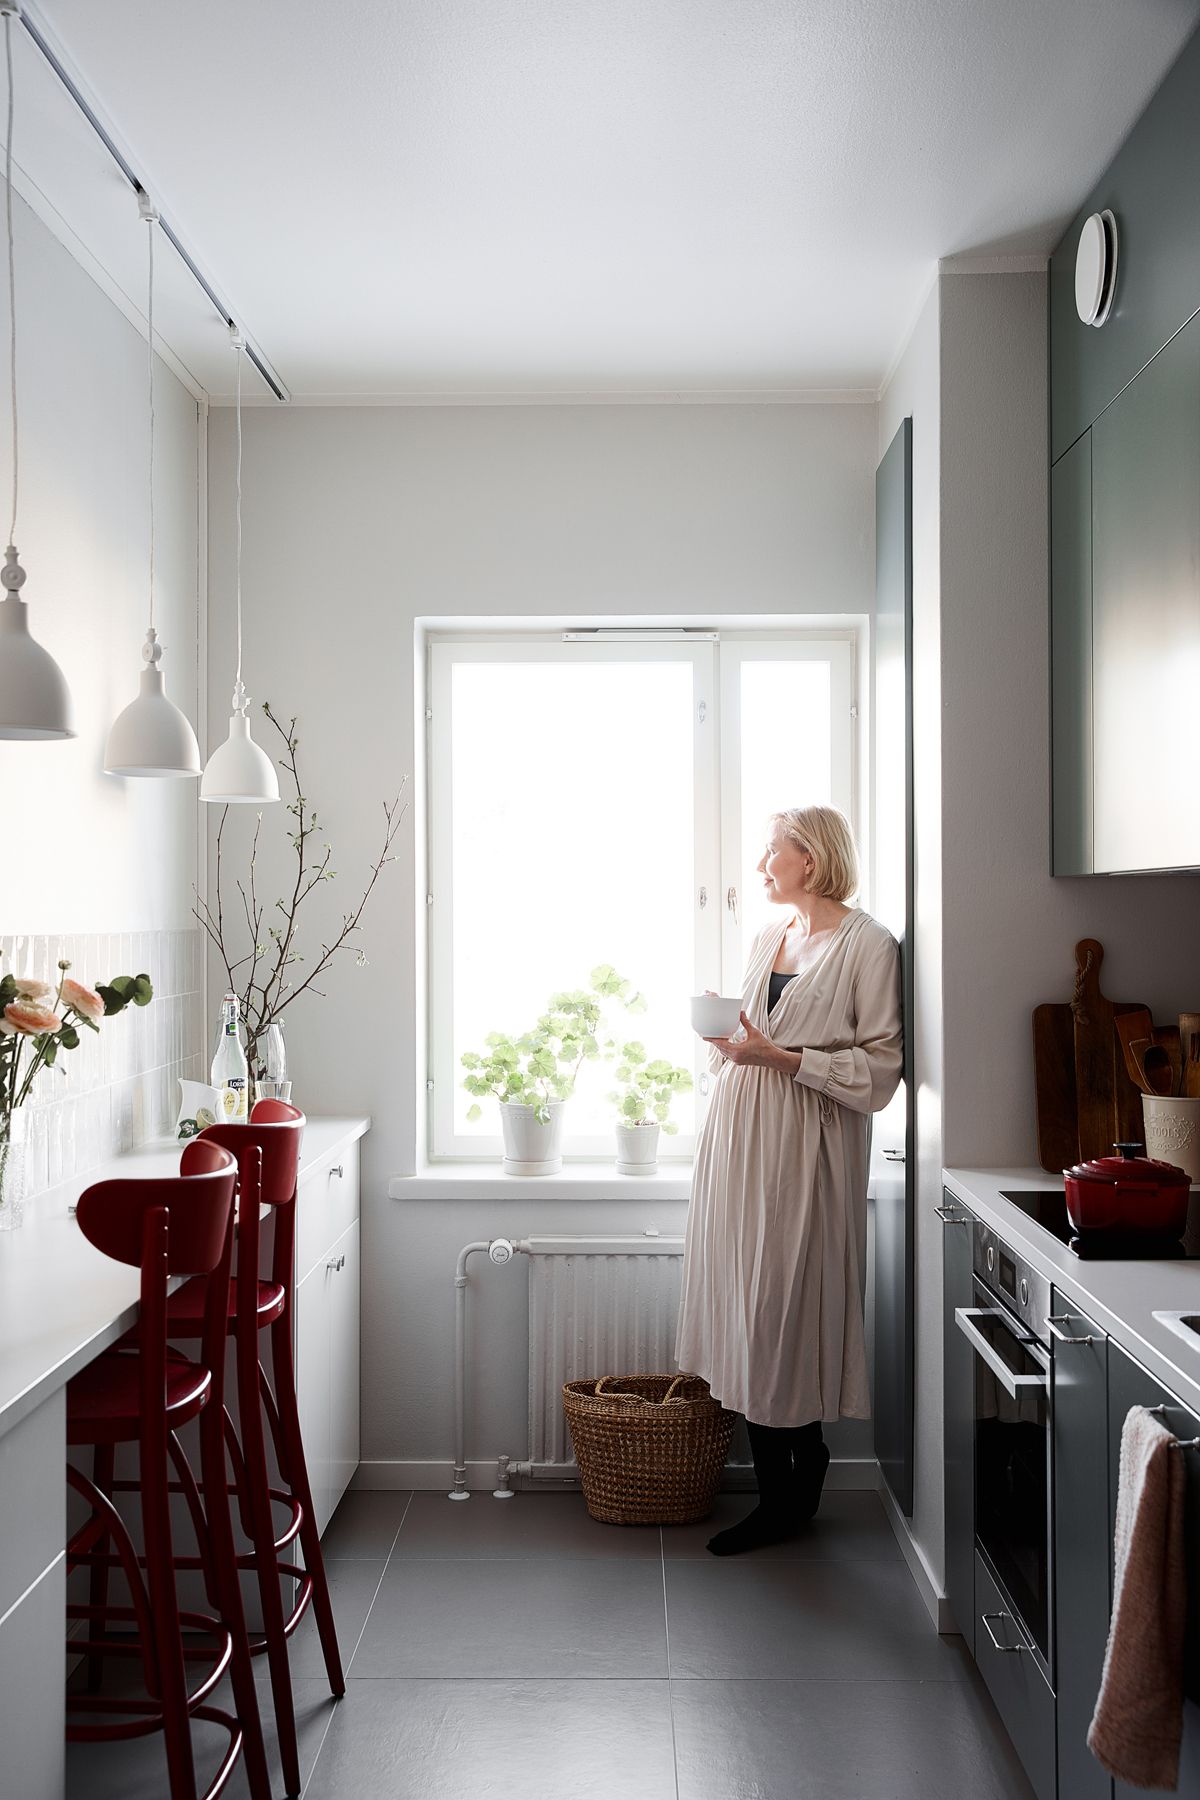 Hanna Velling katselee keittiön ikkunasta. Kuva: Krista Keltanen.